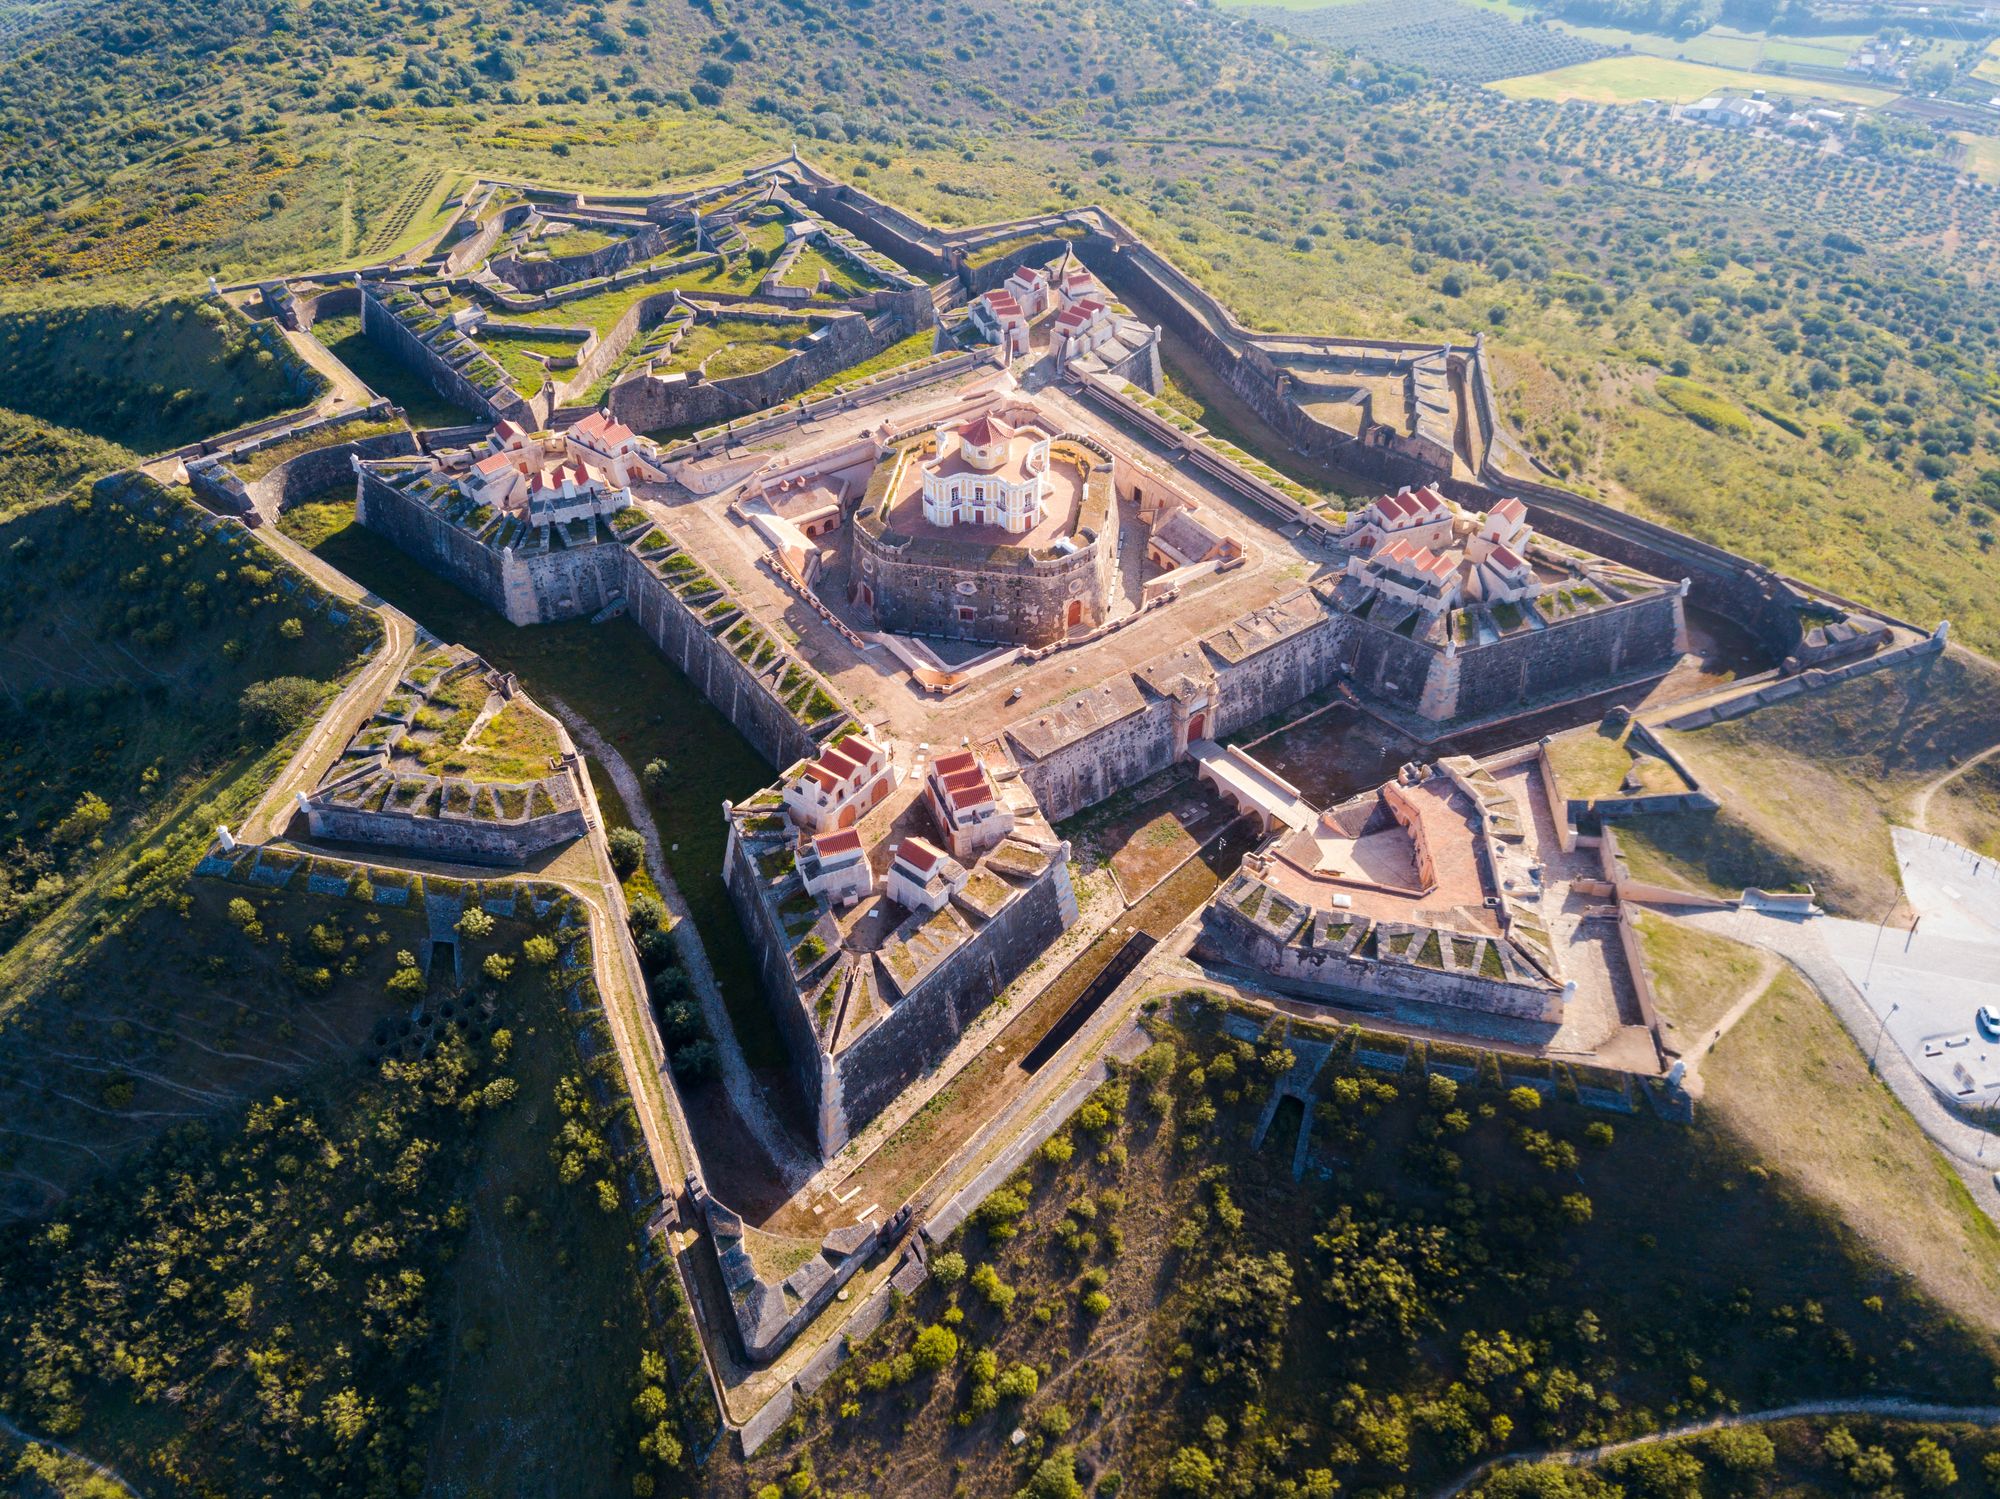 La ciudad de Elvas está rodeada de fortificaciones que fueron construidas para defender al pueblo portugués de invasiones españolas.